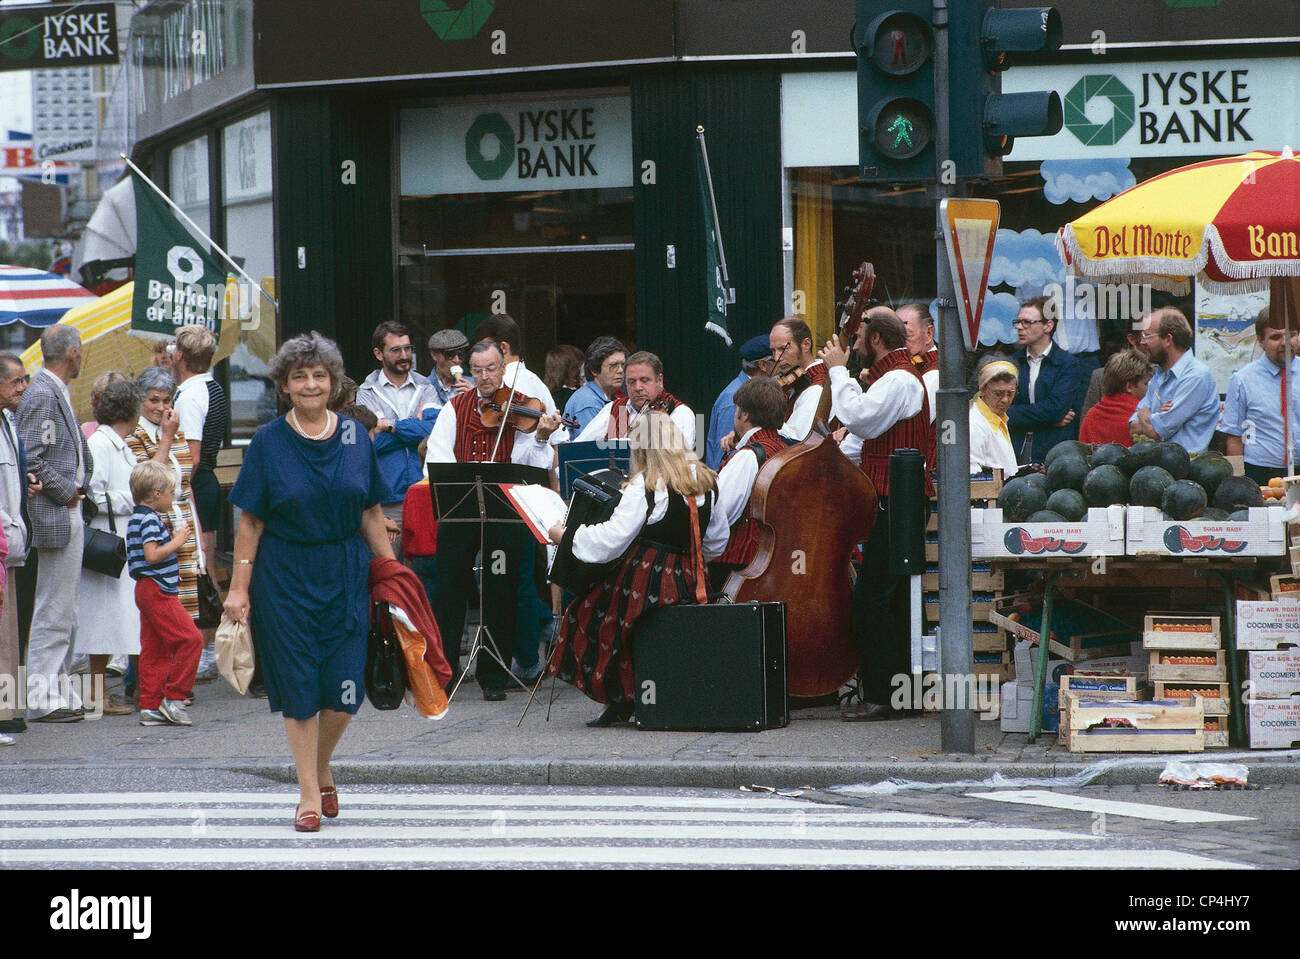 Le Nord du Jutland - Danemark - Aalborg, les musiciens jouent dans la rue. Banque D'Images